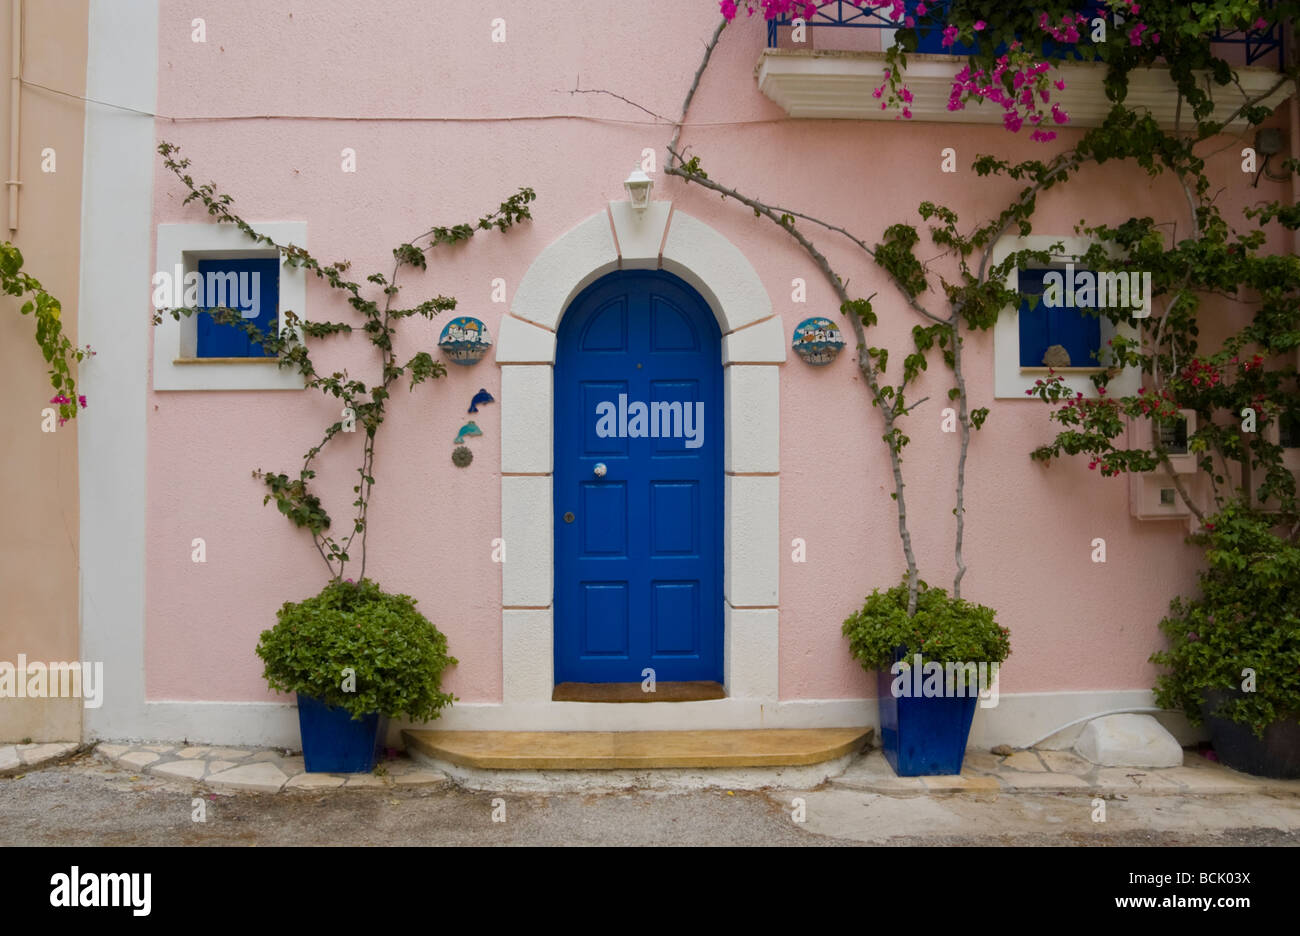 Ferienhäuser und Ferienwohnungen mit Trauerweiden im Dorf Assos auf der griechischen Insel Kefalonia Griechenland GR bedeckt Stockfoto